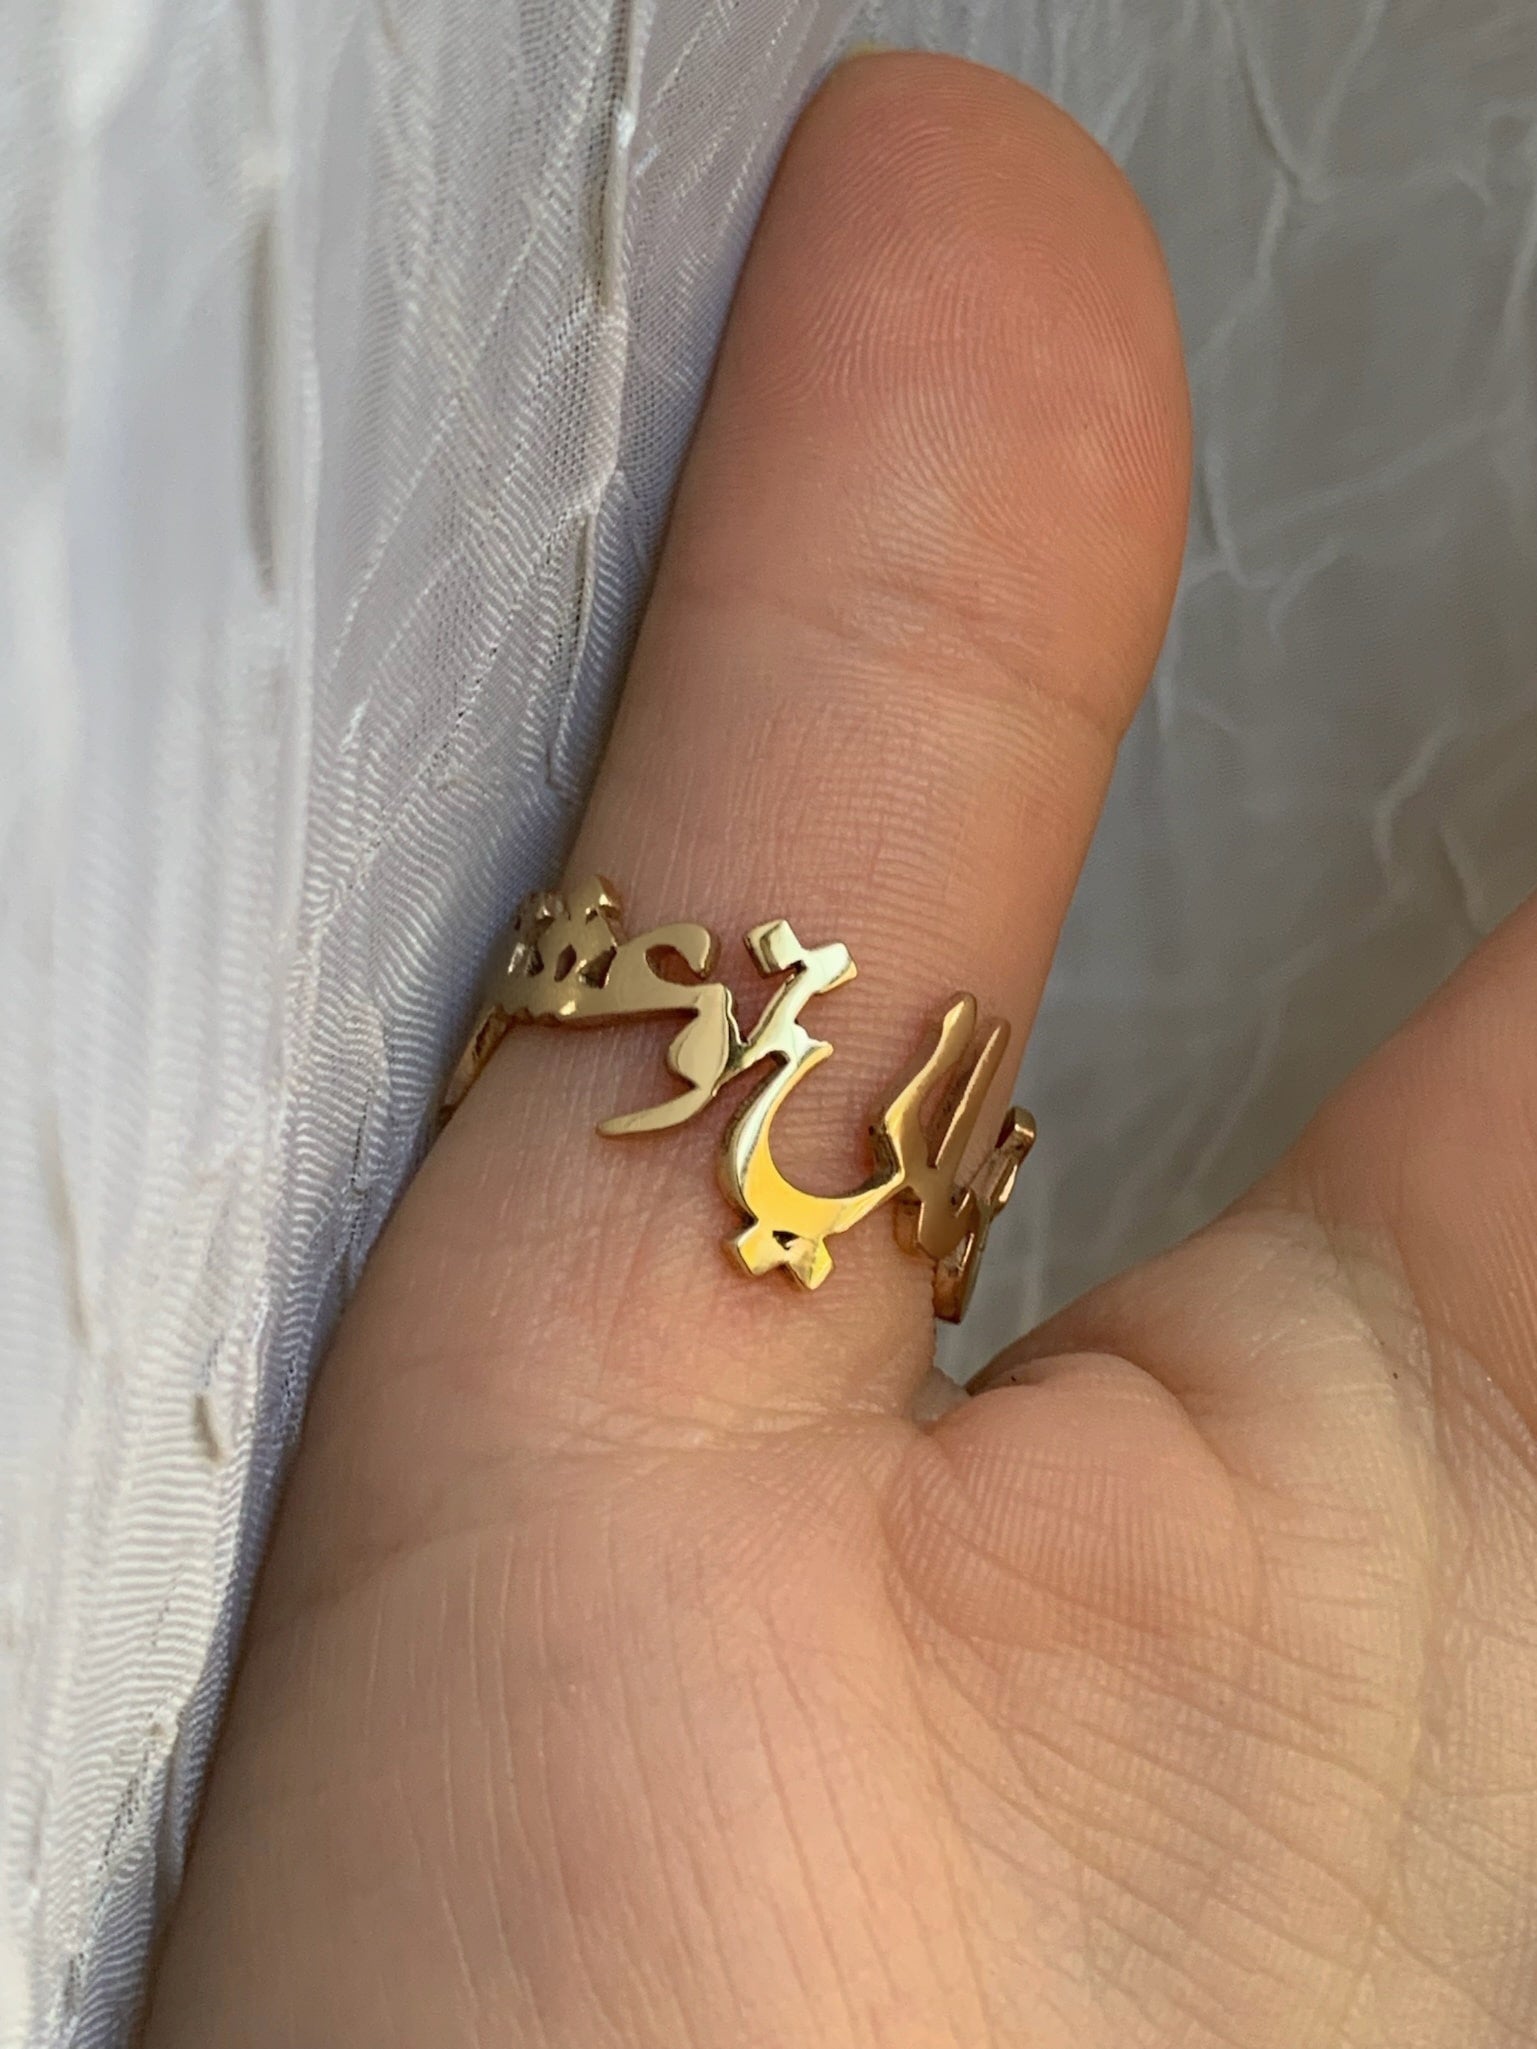 Arabic/Persian Initial Earrings in Brass